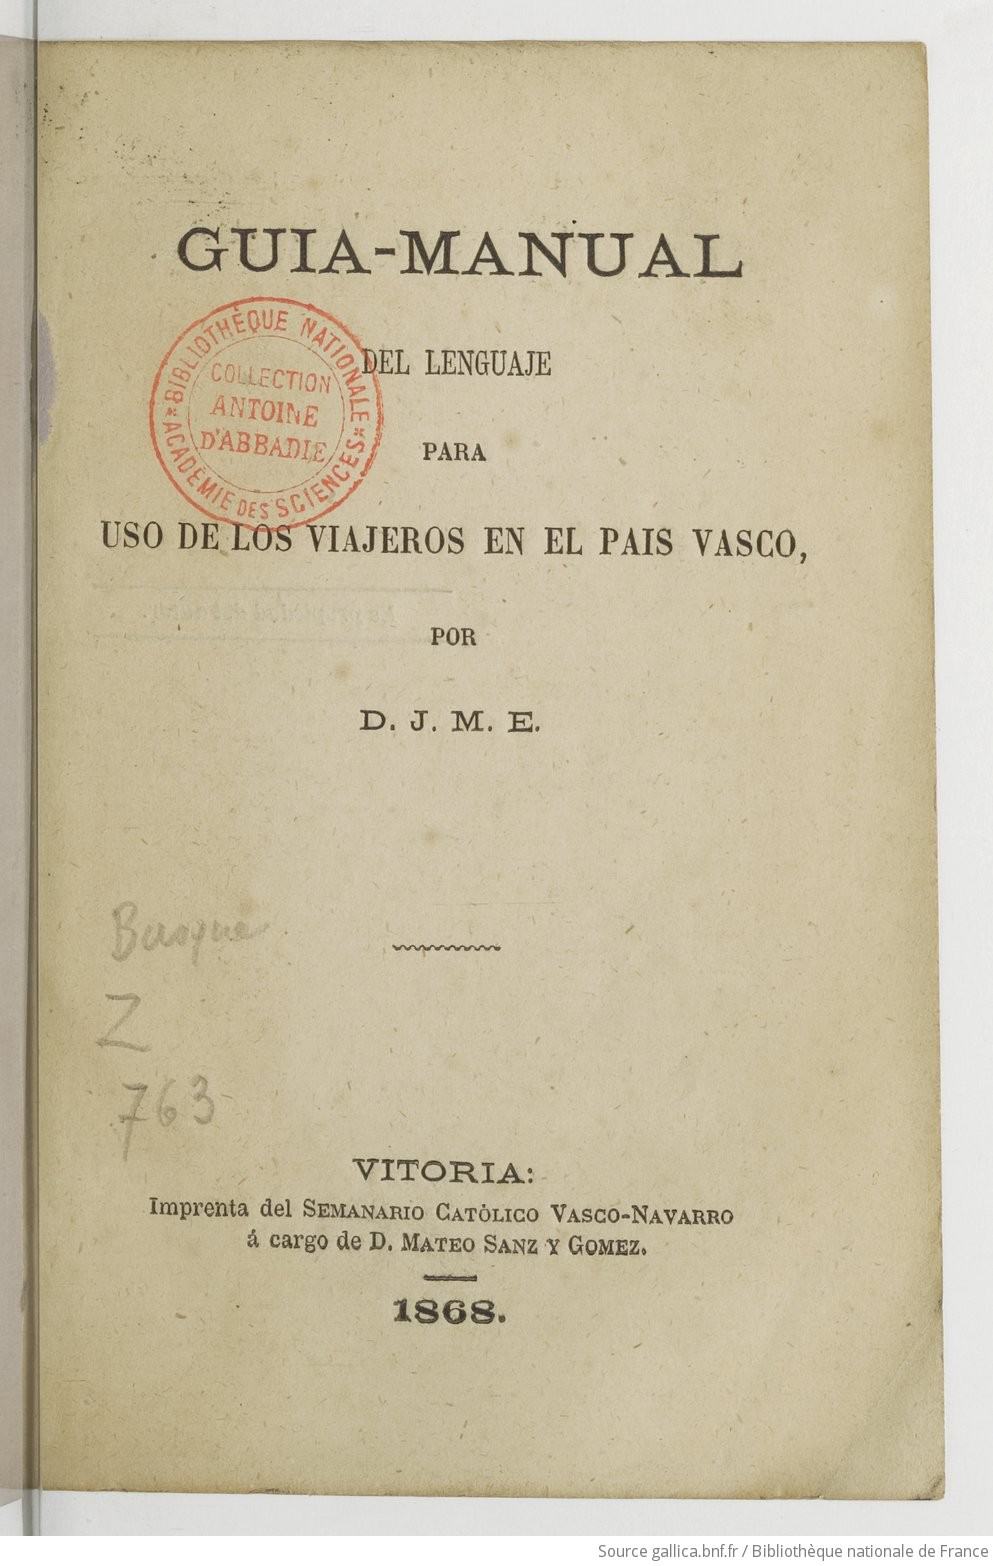 Guia-manual del lenguaje para uso de los viajeros en el país vasco